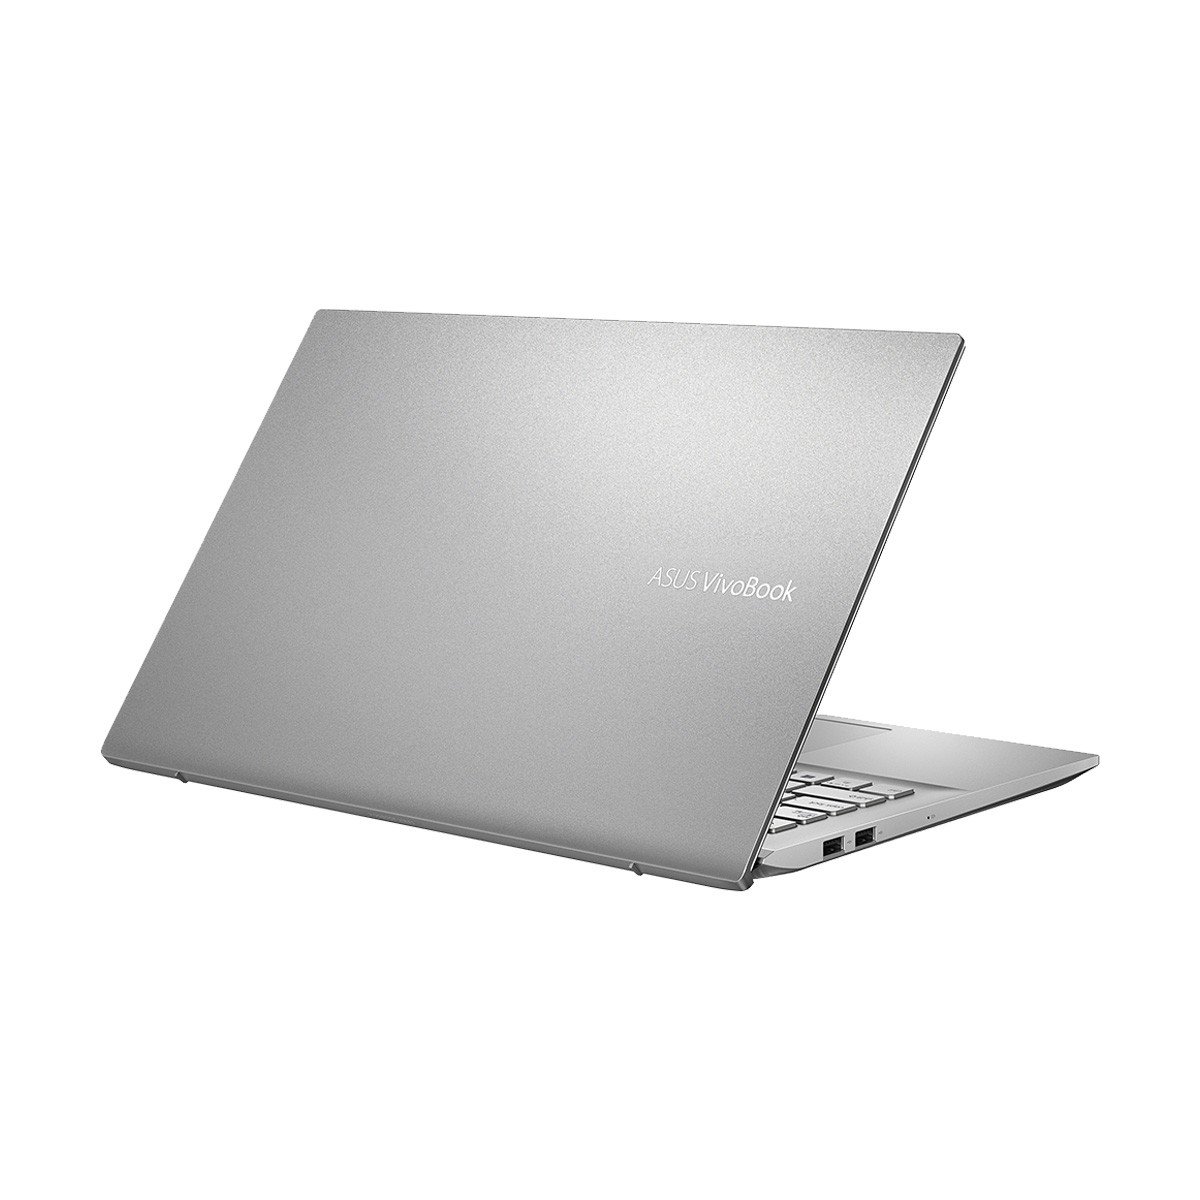 Asus VivoBook S15 S531FL 8th Gen Intel Core i5 8265U Aristo Computers